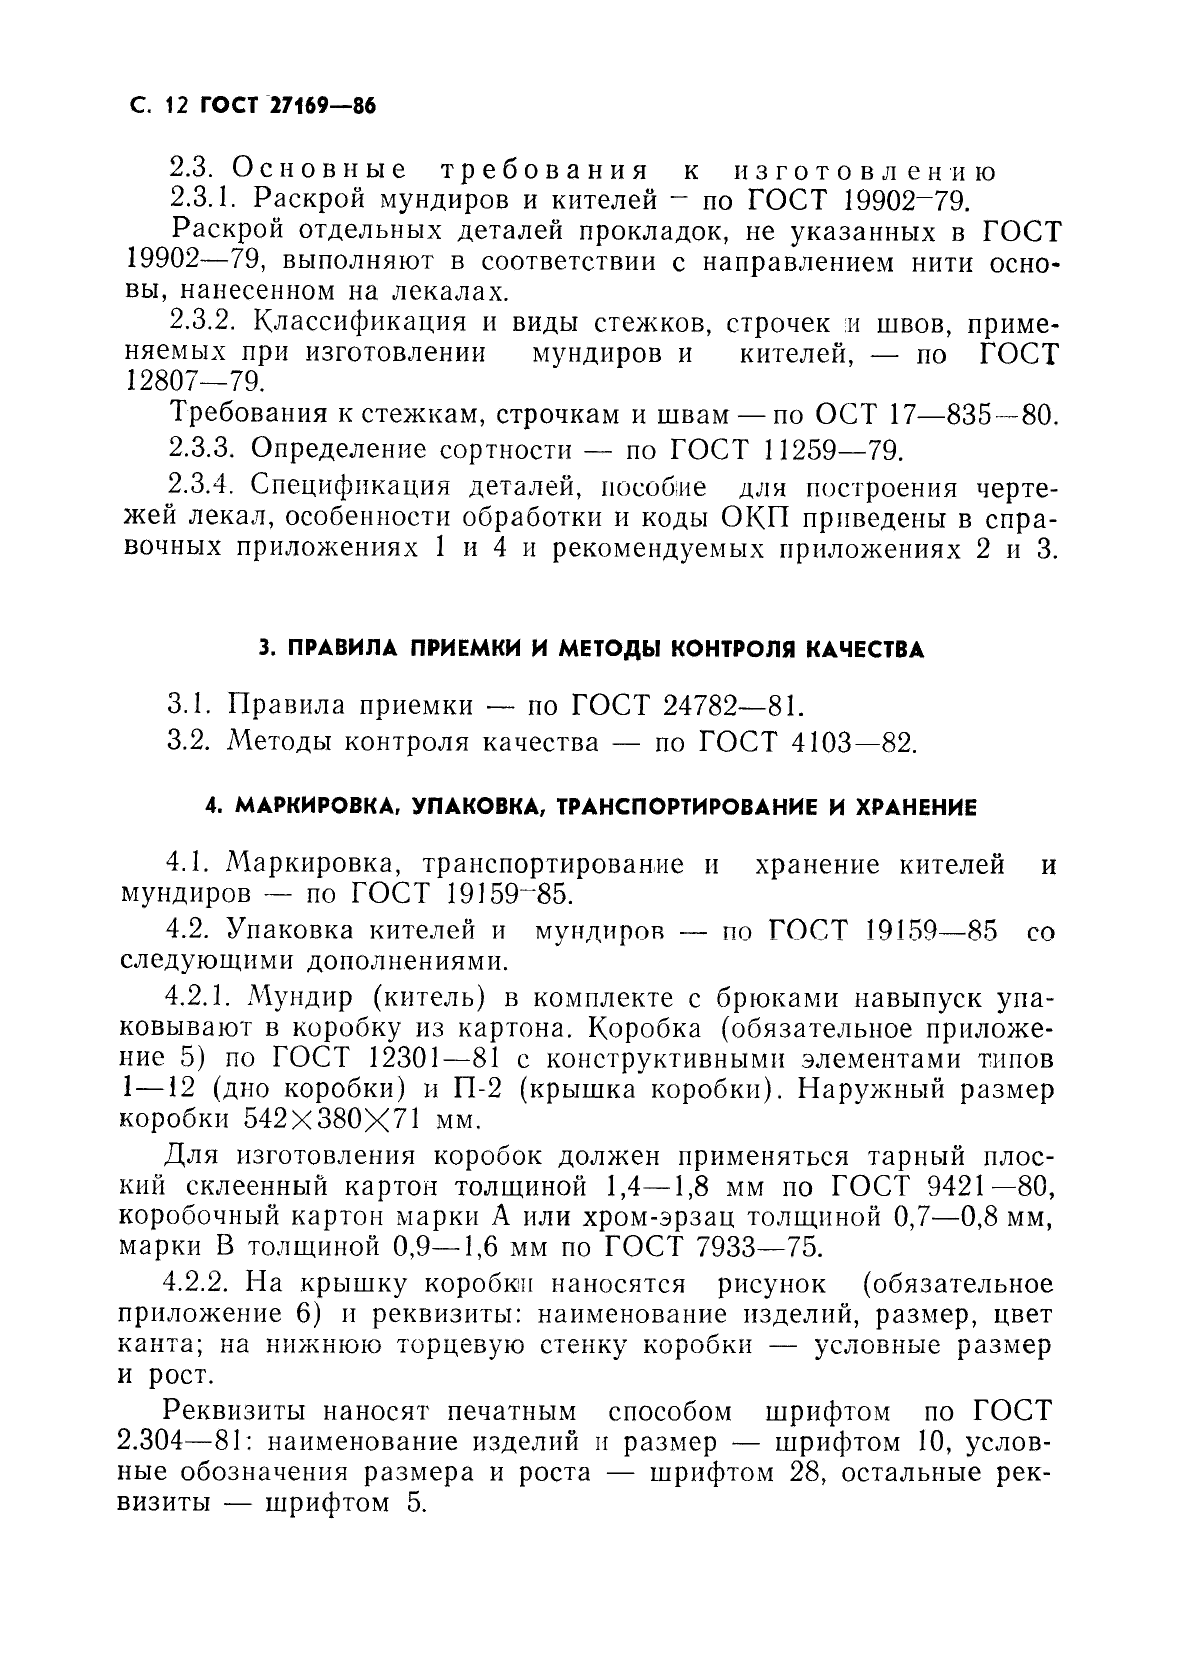 ГОСТ 27169-86 Мундир и китель для офицеров и прапорщиков Советской Армии. Технические условия (фото 14 из 42)